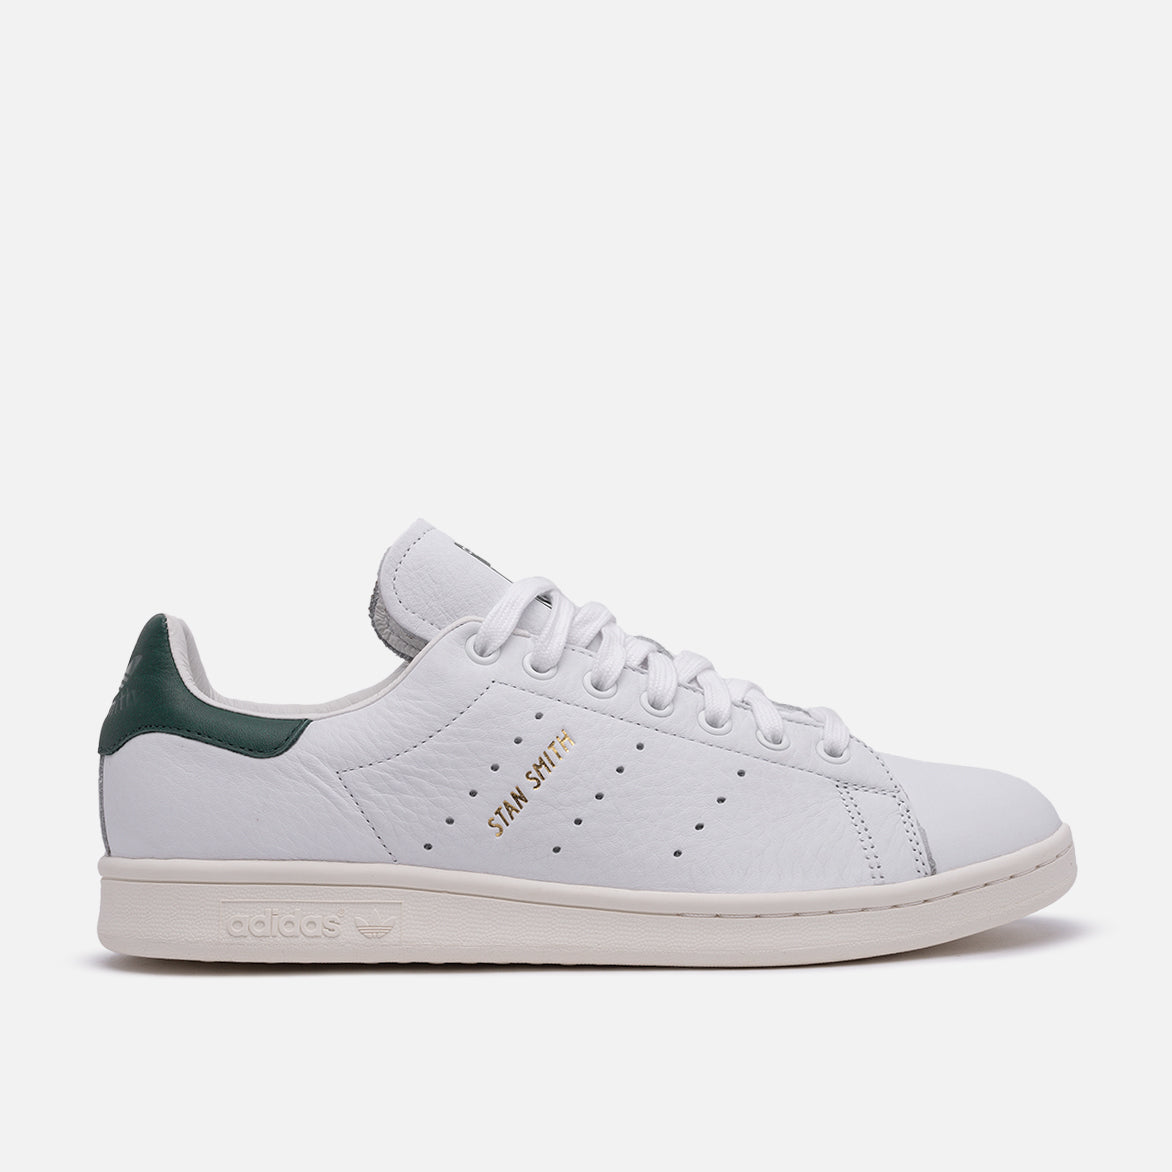 Adidas Stan Smith Shoes White/Green